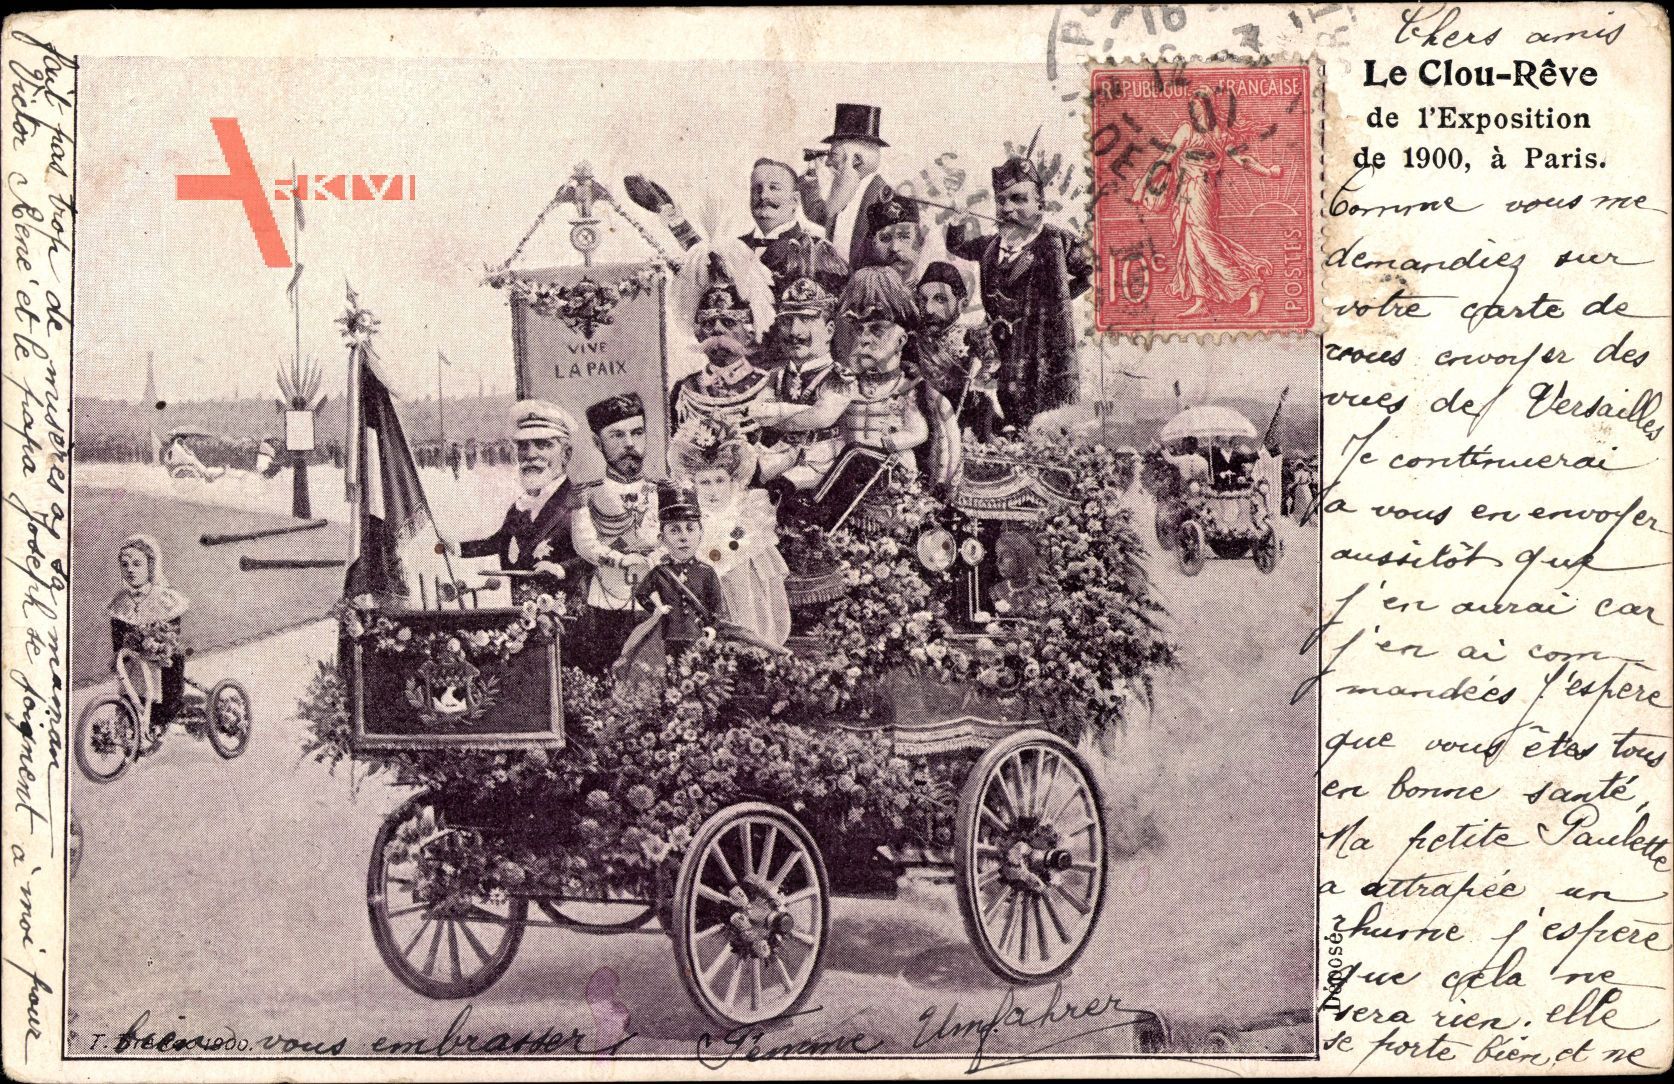 Loubet, Le Clour Rêve de lExposition 1900 à Paris, Nikolaus II, Vive la Paix